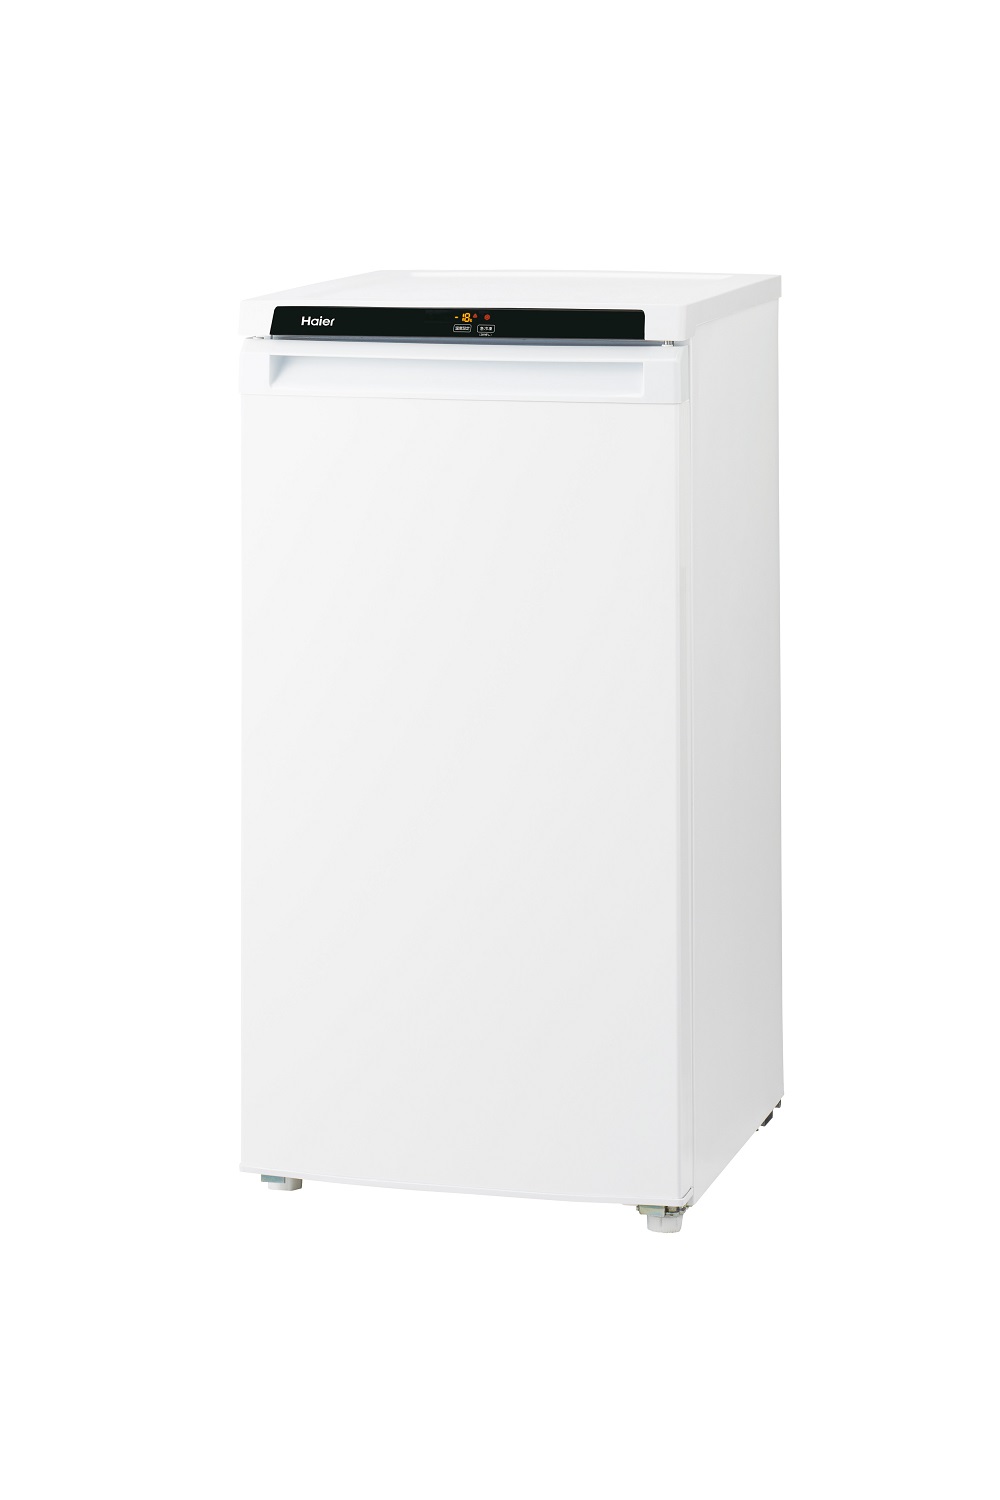 ハイアール 冷凍庫 1ドア 33L JF-NU33A(W) ホワイト - 冷蔵庫・冷凍庫